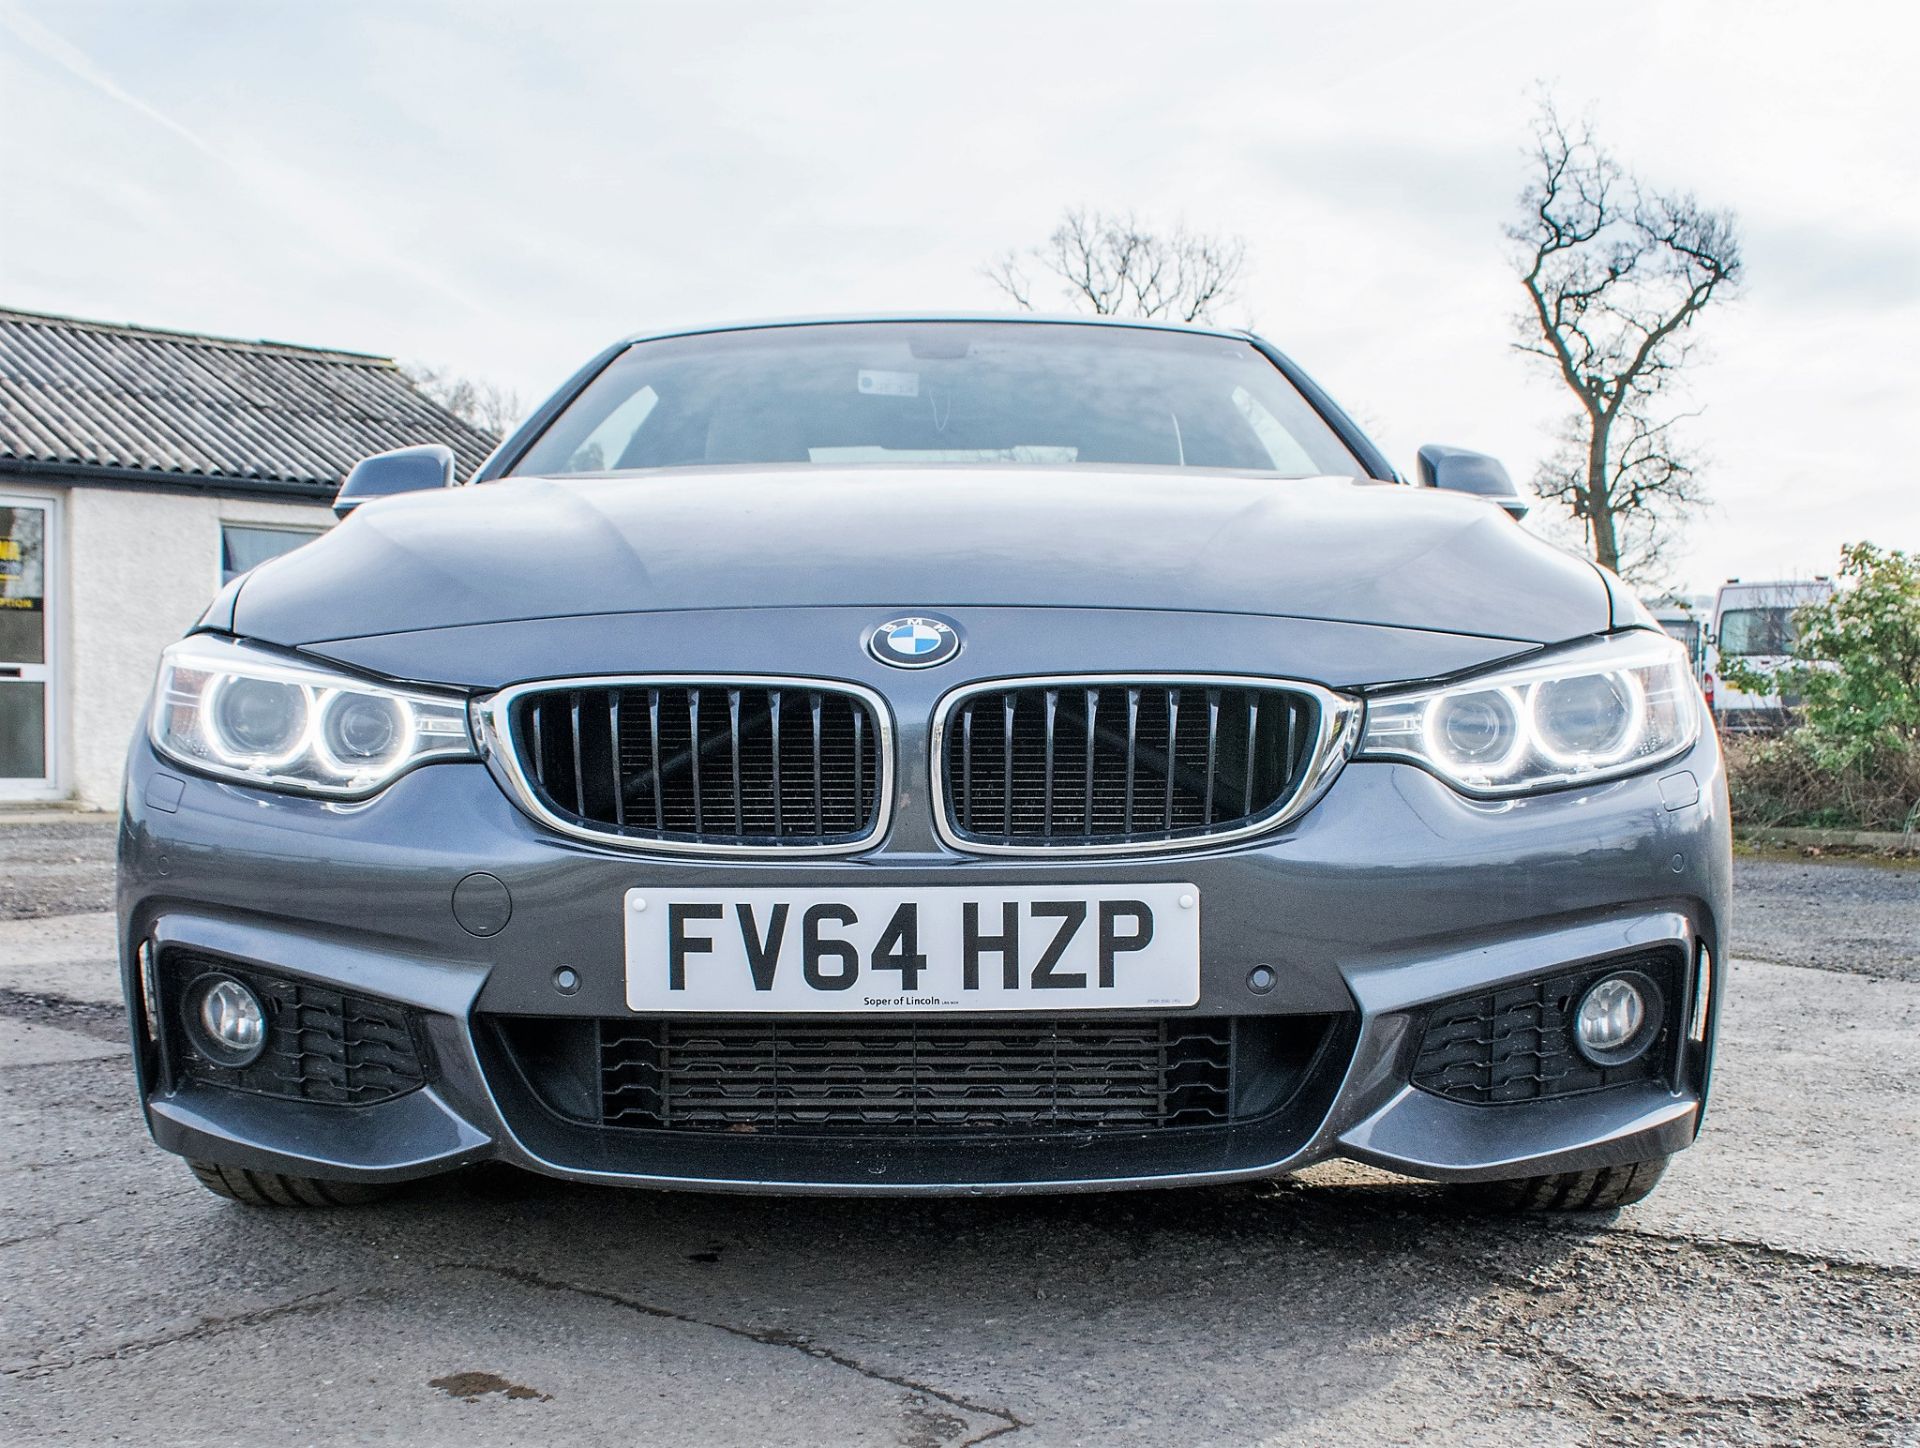 BMW 430D M sport automatic diesel car  Registration number: FV64 HZP Date of registration: 28/11/ - Image 5 of 24